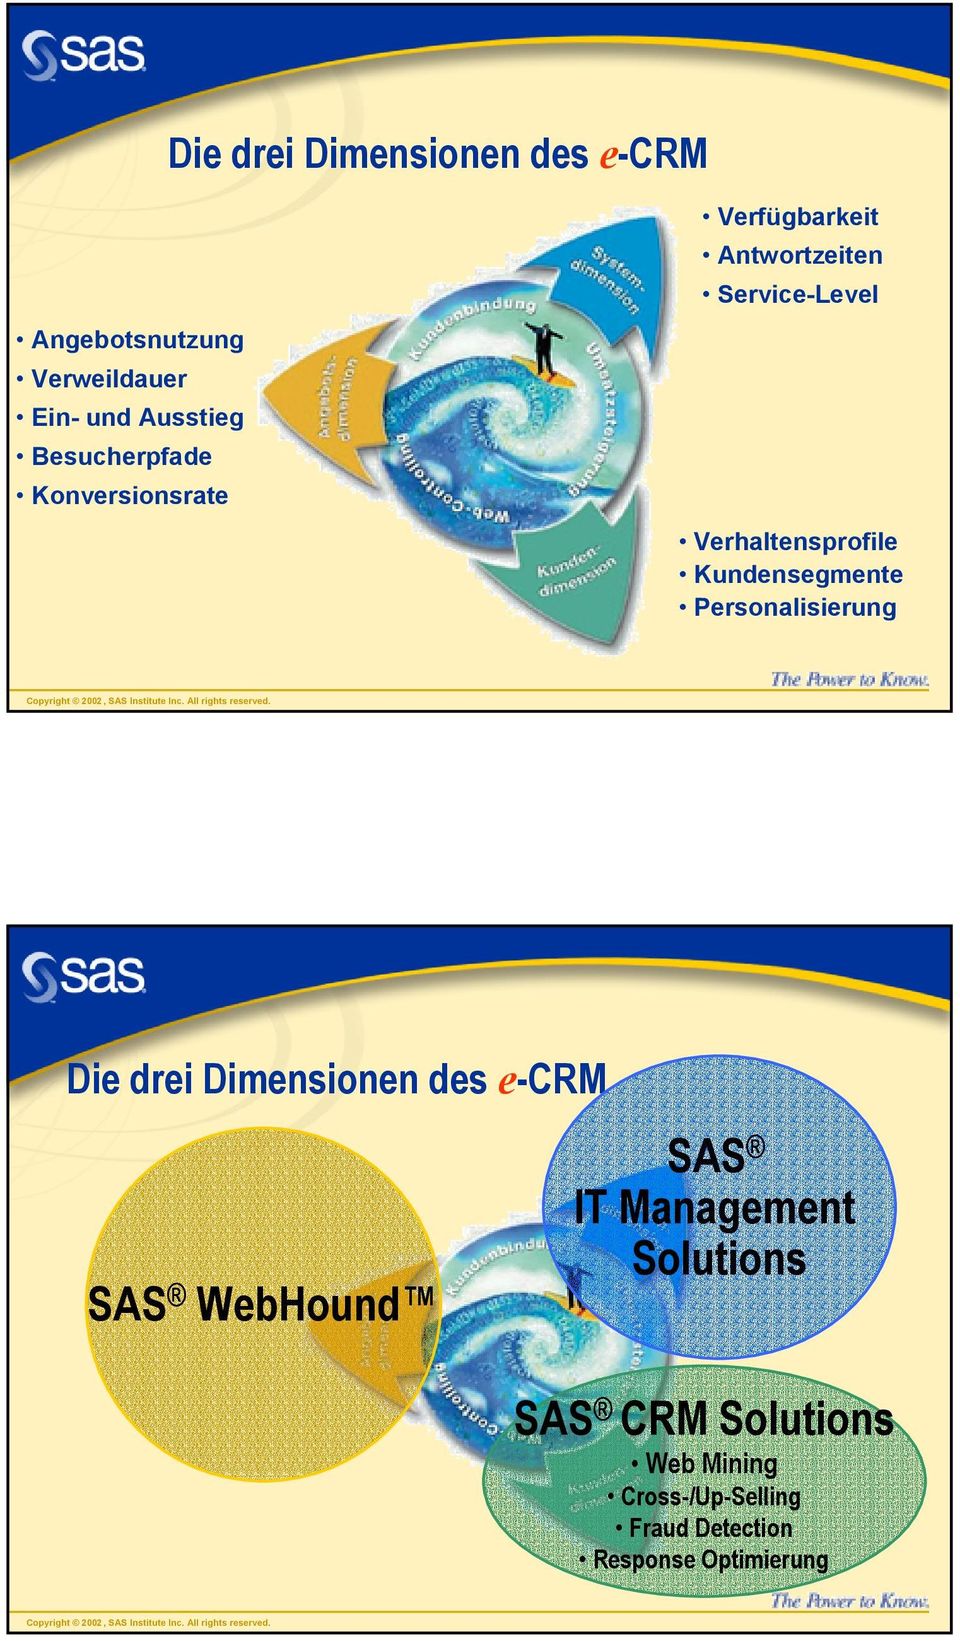 Verhaltensprofile Kundensegmente Personalisierung Die drei Dimensionen des e-crm SAS